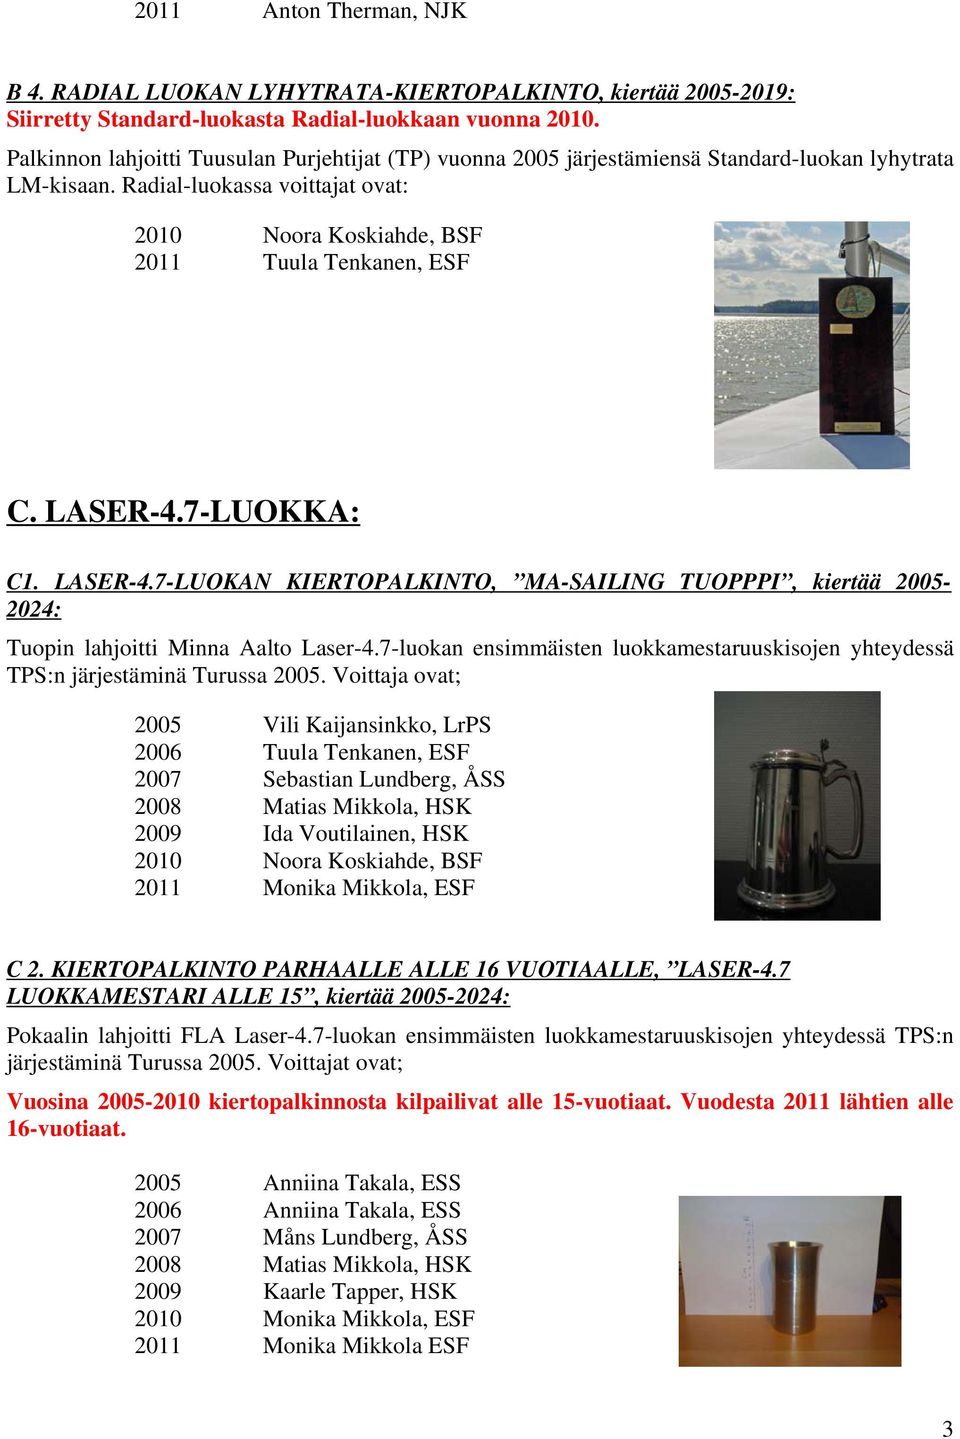 LASER-4.7-LUOKKA: C1. LASER-4.7-LUOKAN KIERTOPALKINTO, MA-SAILING TUOPPPI, kiertää 2005-2024: Tuopin lahjoitti Minna Aalto Laser-4.